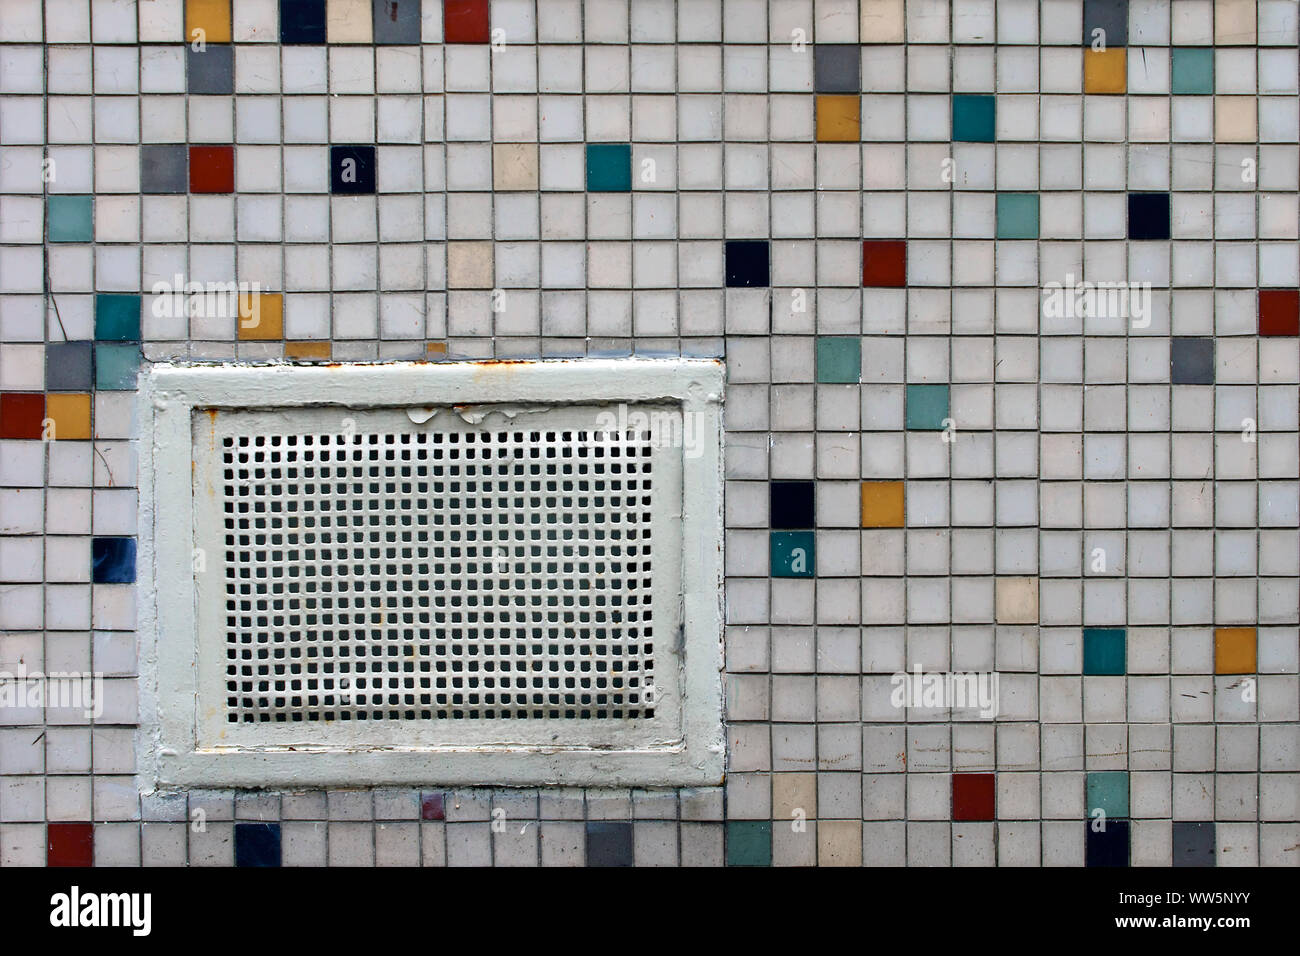 Photographie d'une cave berline avec une grille sur un mur de carreaux de mosaïque, Banque D'Images